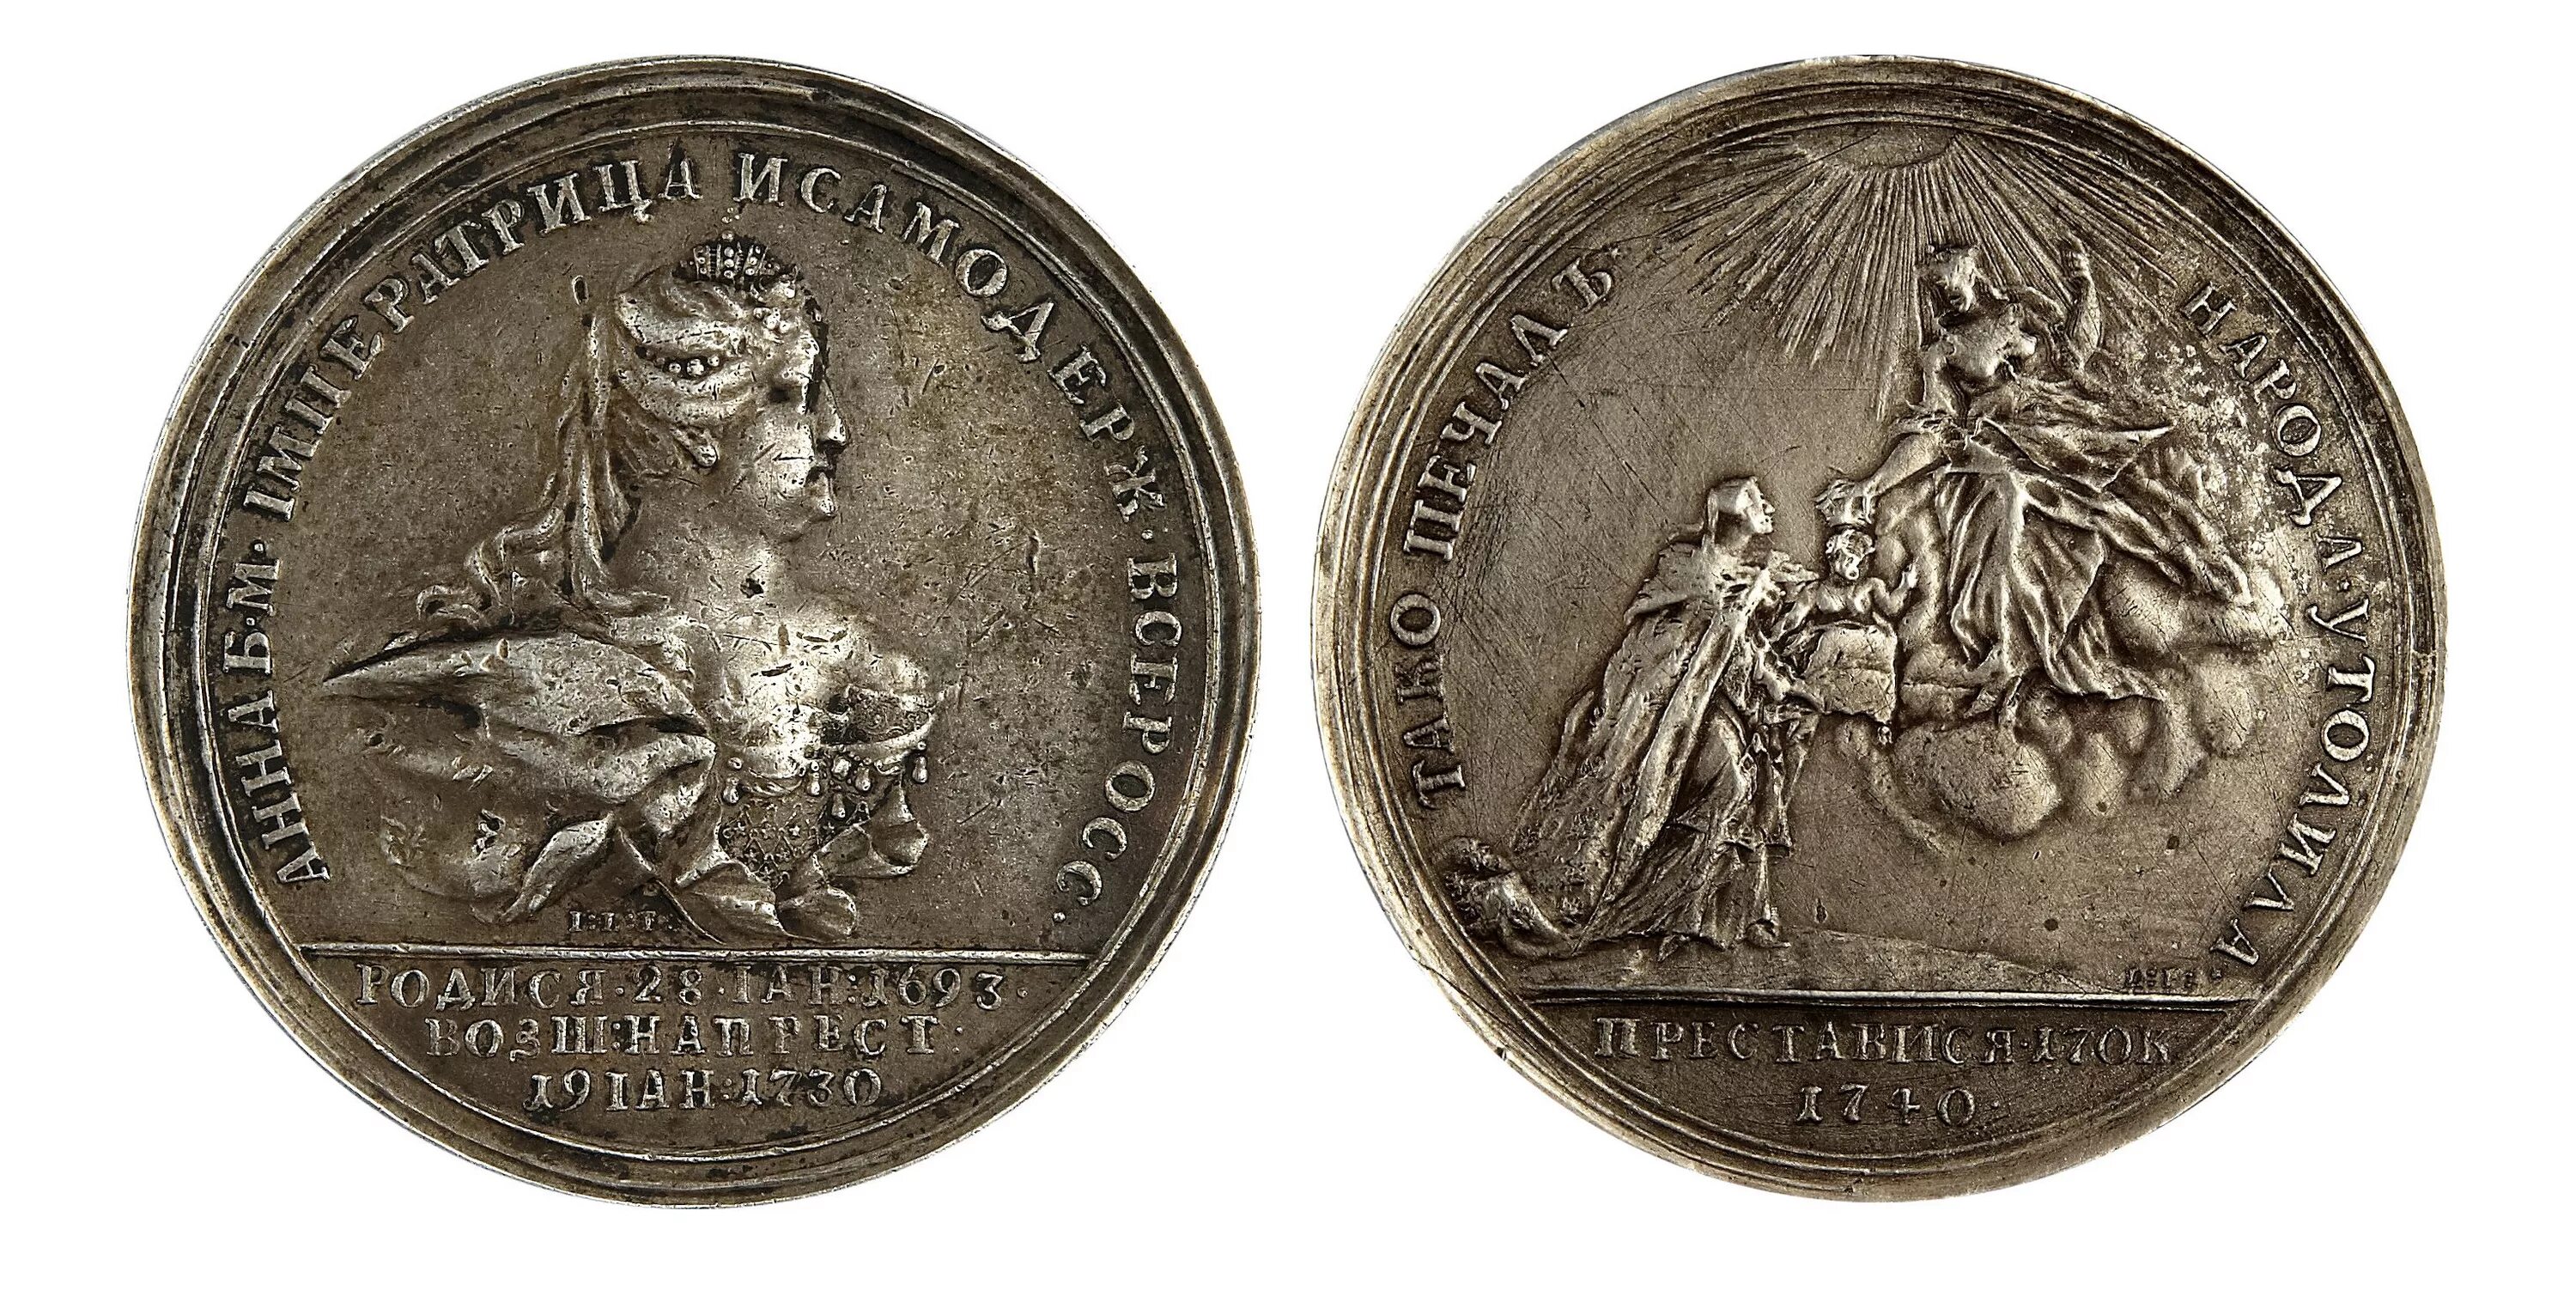 Медаль Анны Иоанновны 1739. Медаль Анны Иоанновны взятие Очакова 1737. Медаль императрицы Анны Иоанновны. Укажите изображенную на медали императрицу